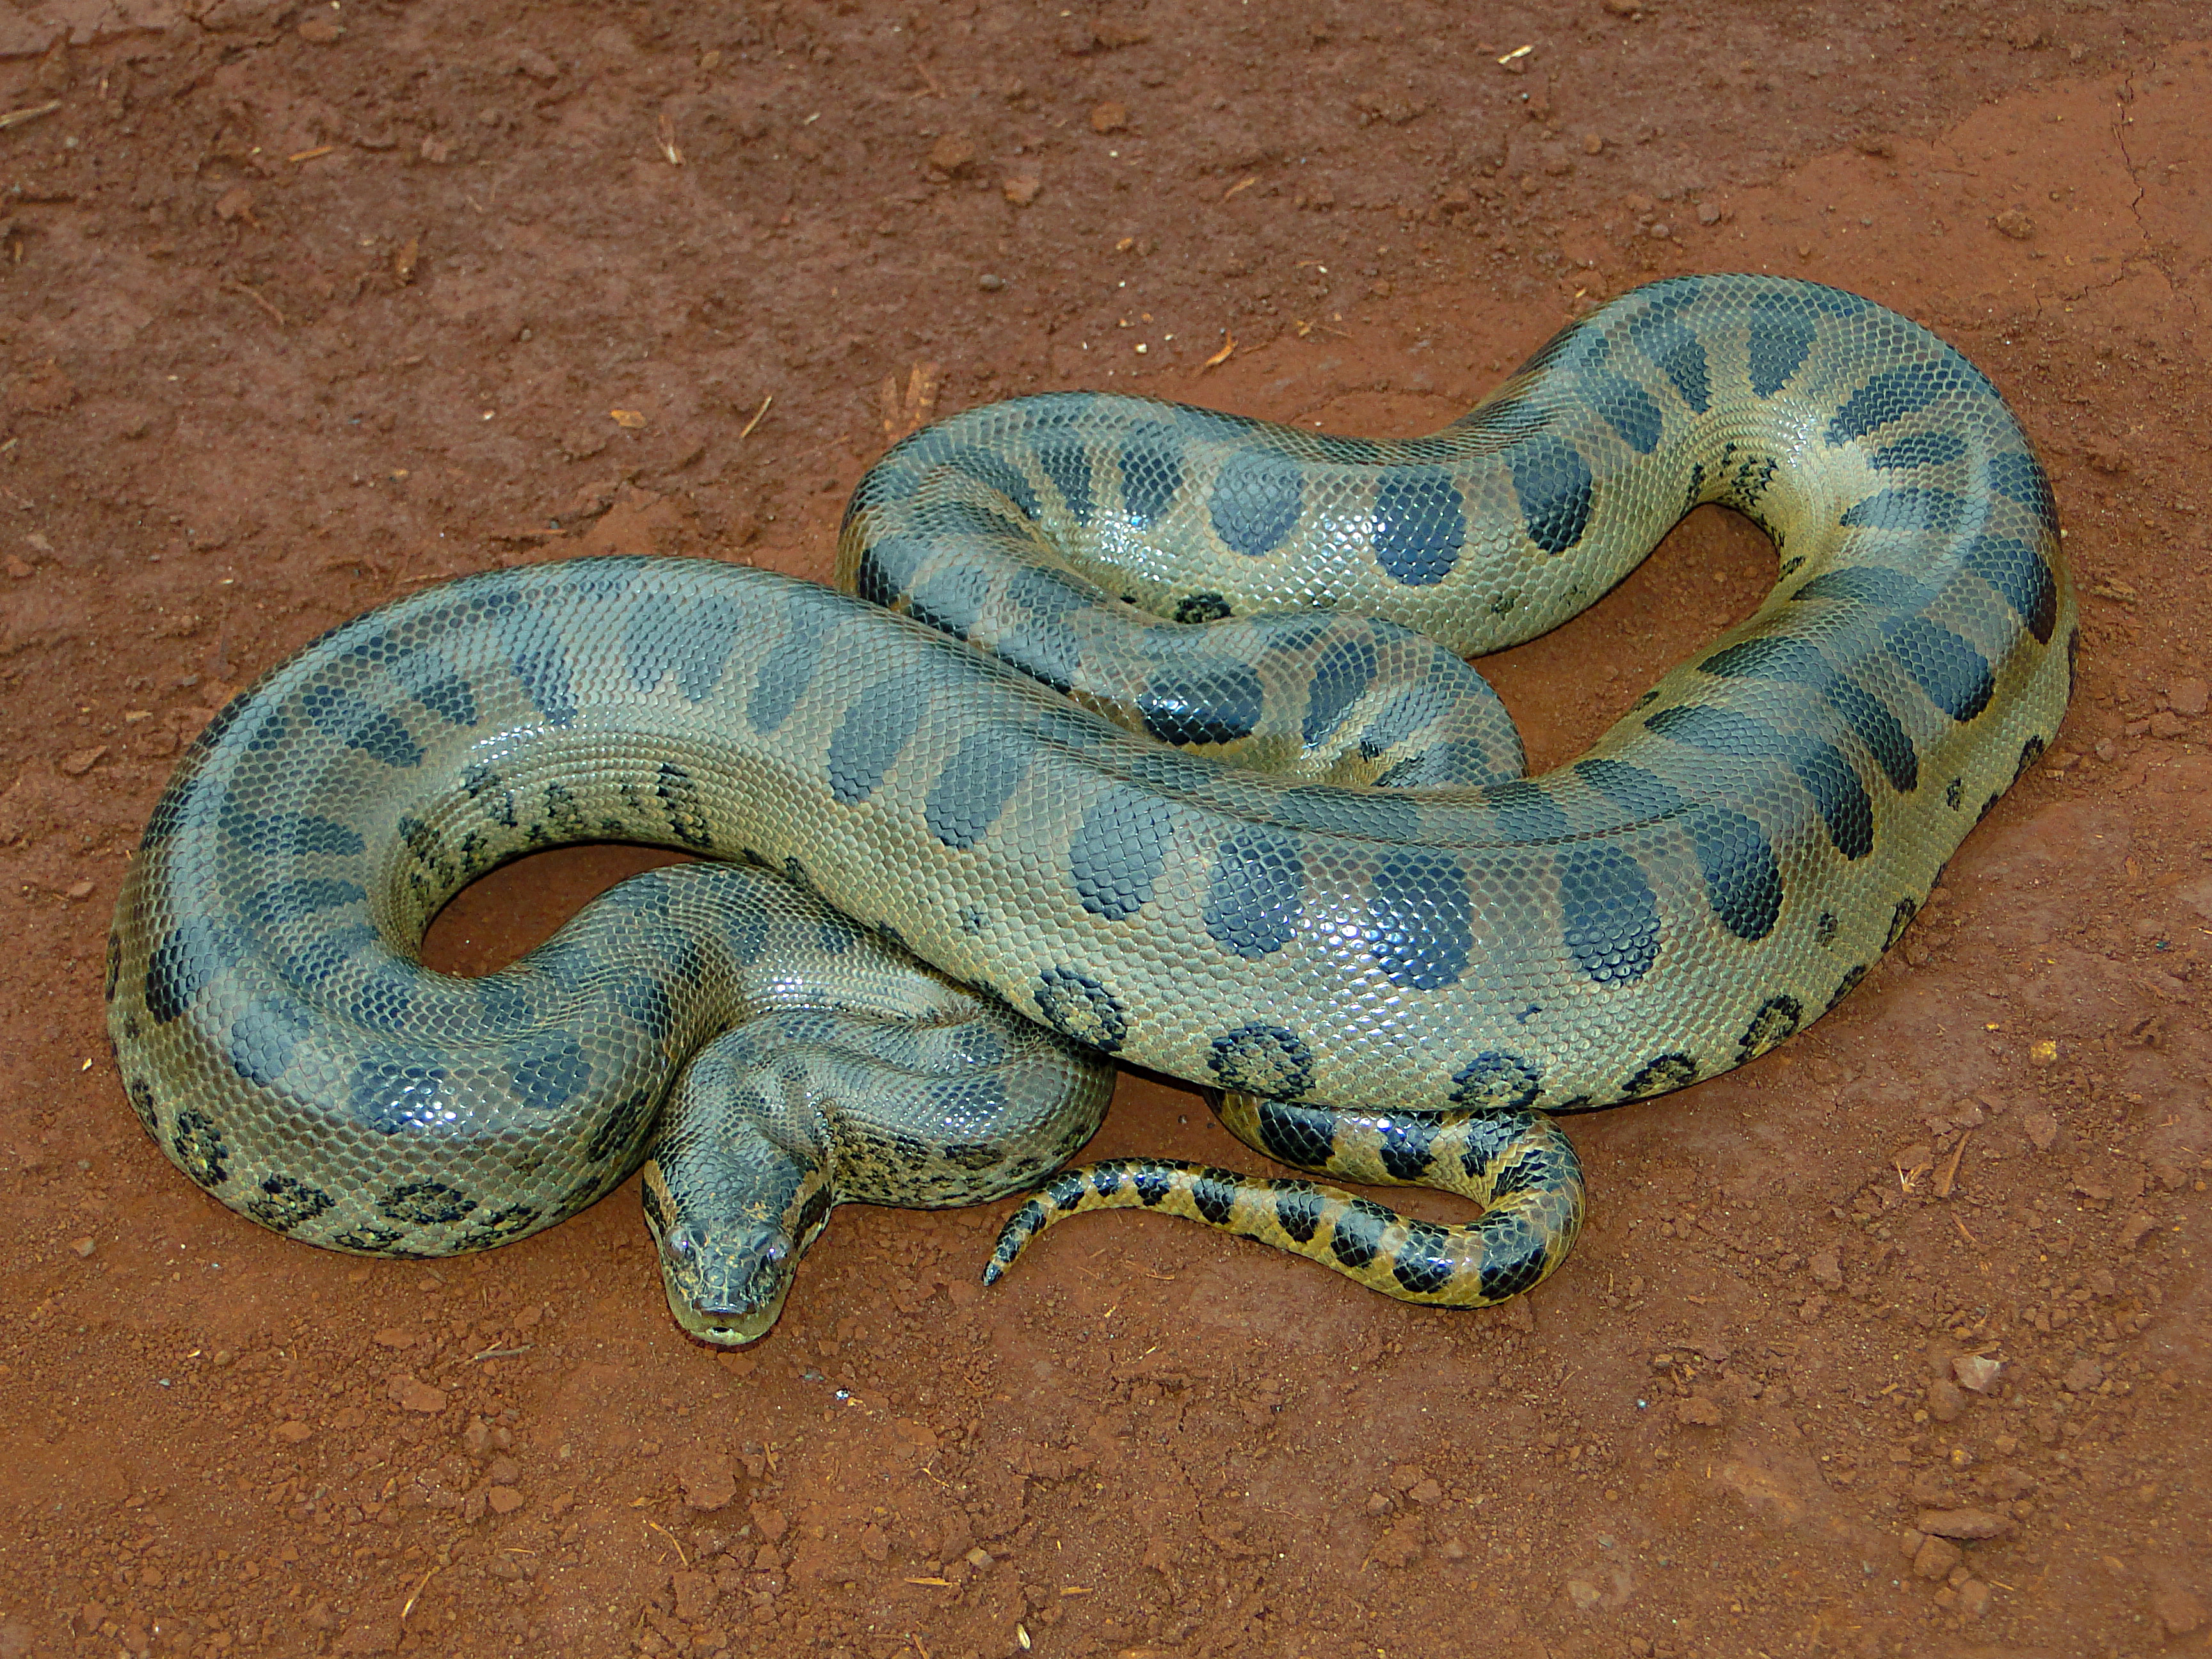 Green anaconda - Wikipedia